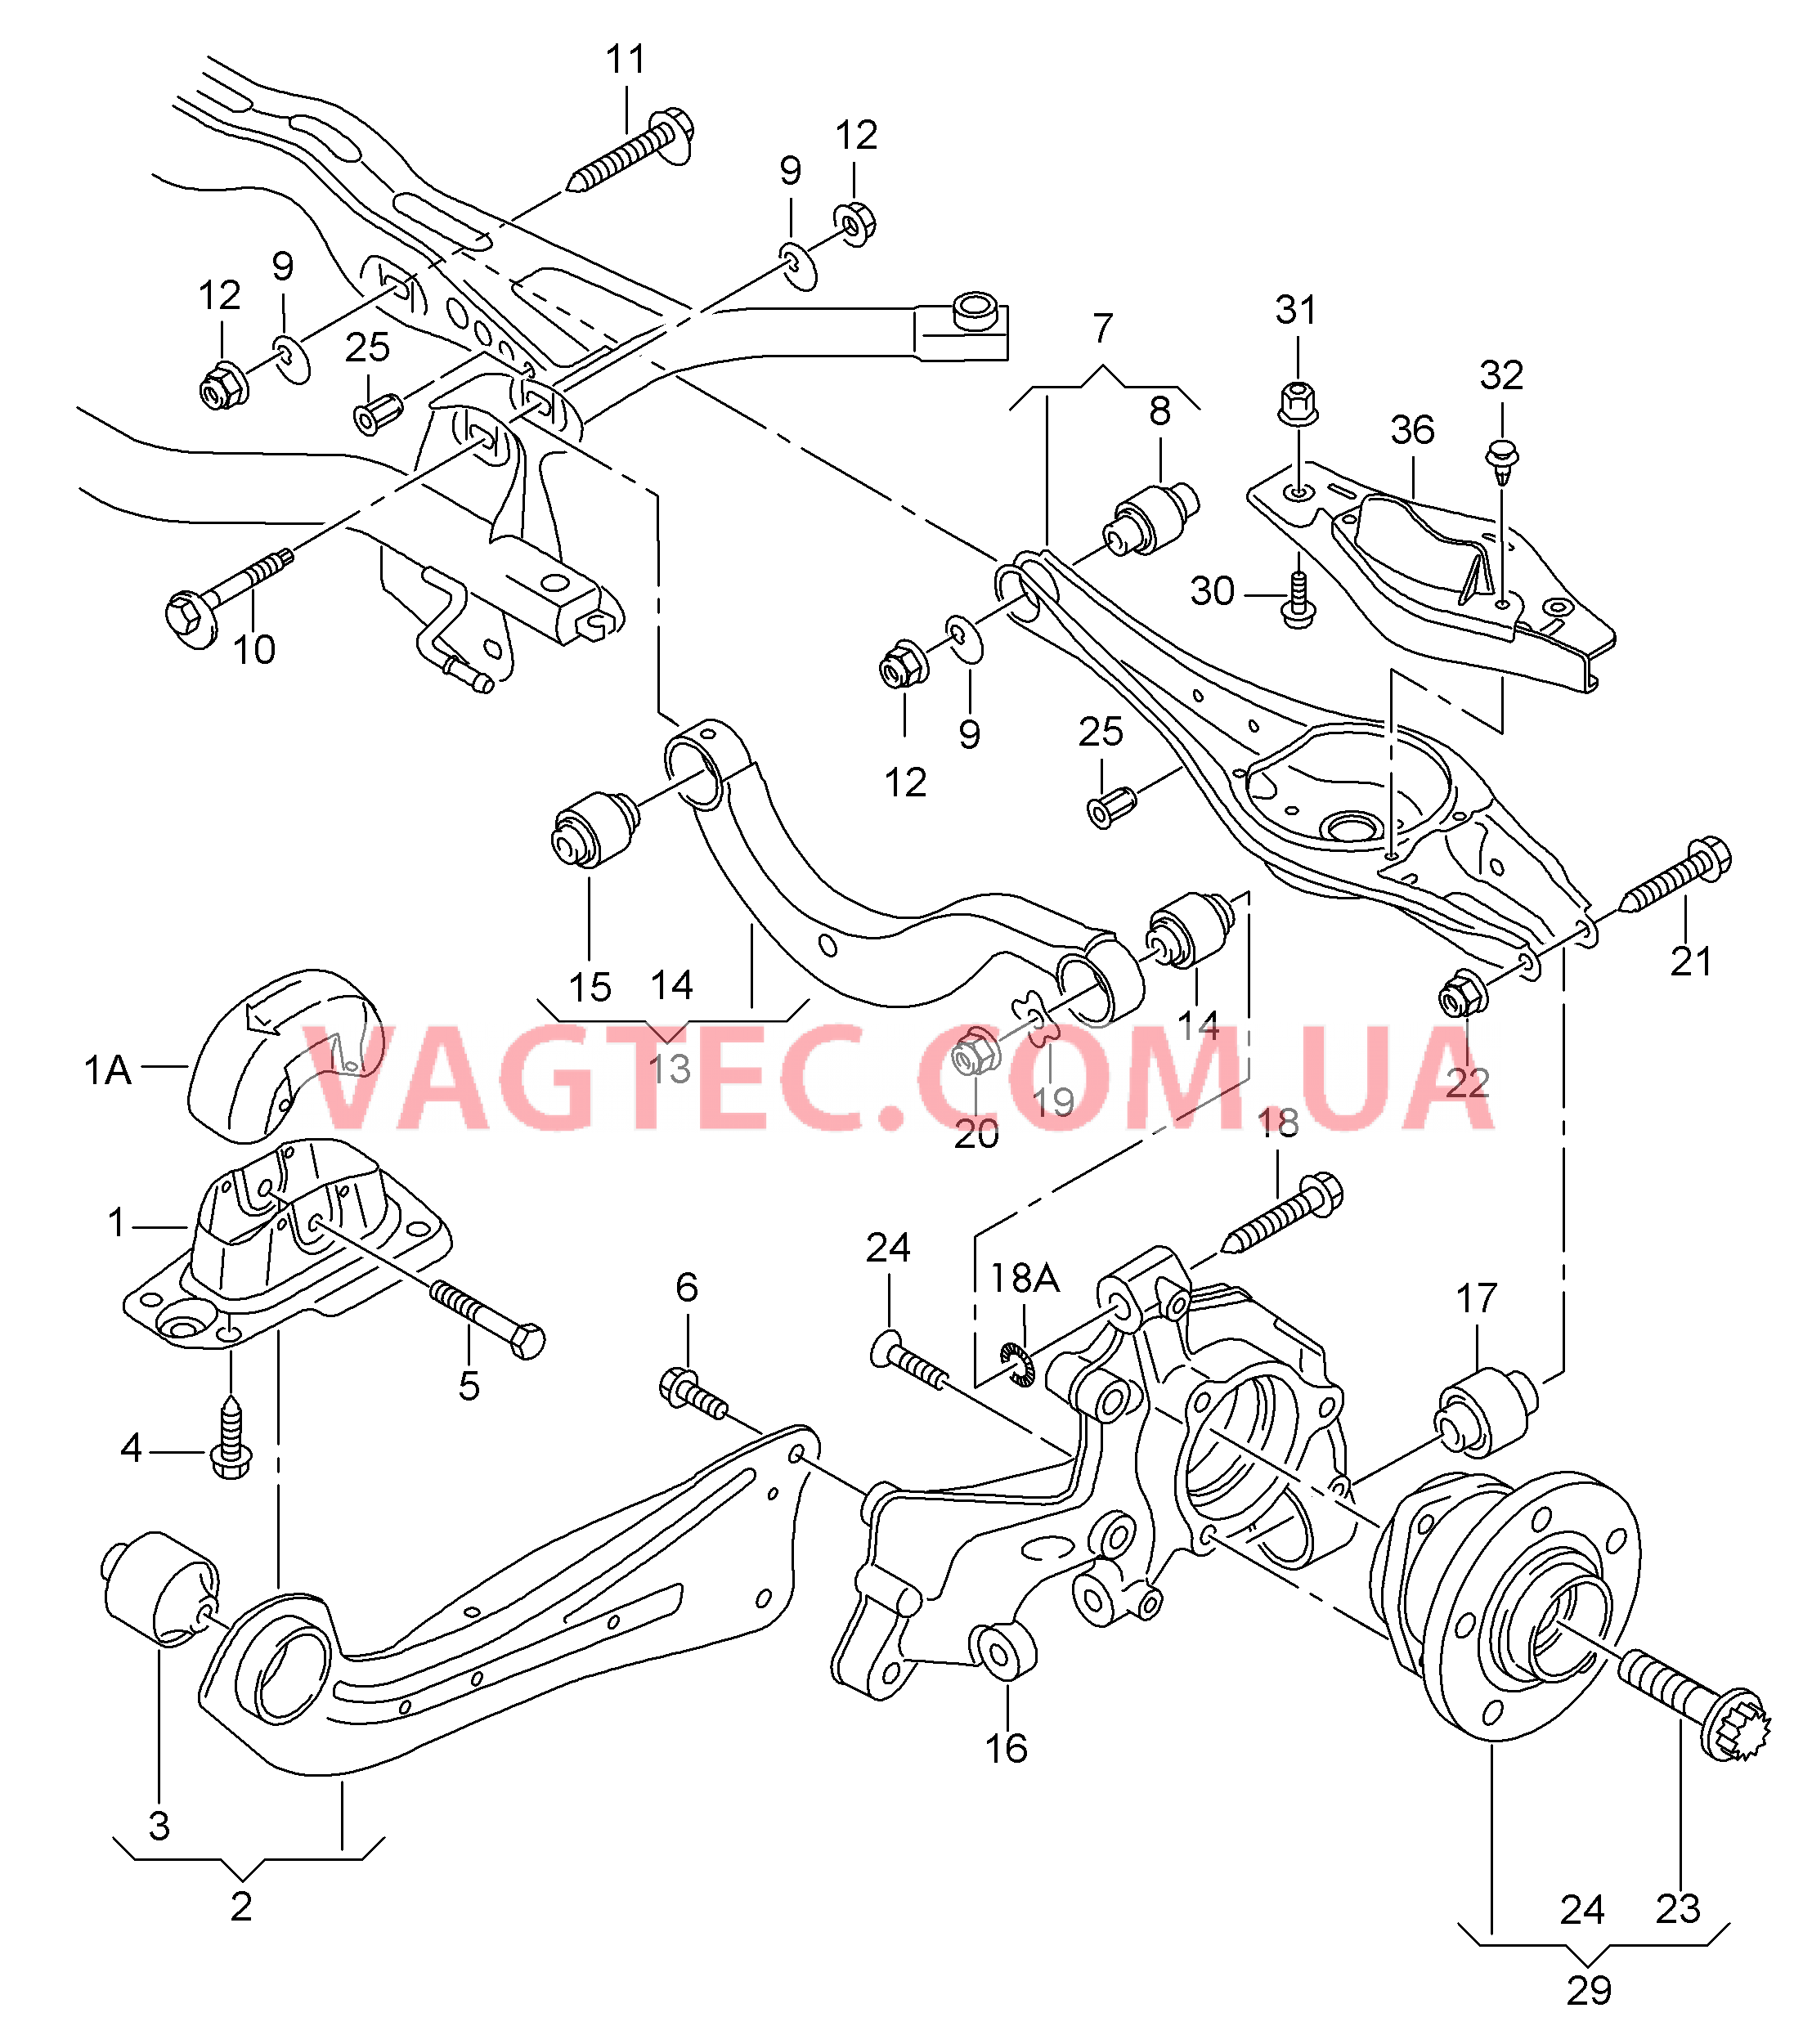 Pычаг подвески, поперечный Pычаг подвески Поворотный кулак  для AUDI TT 2019